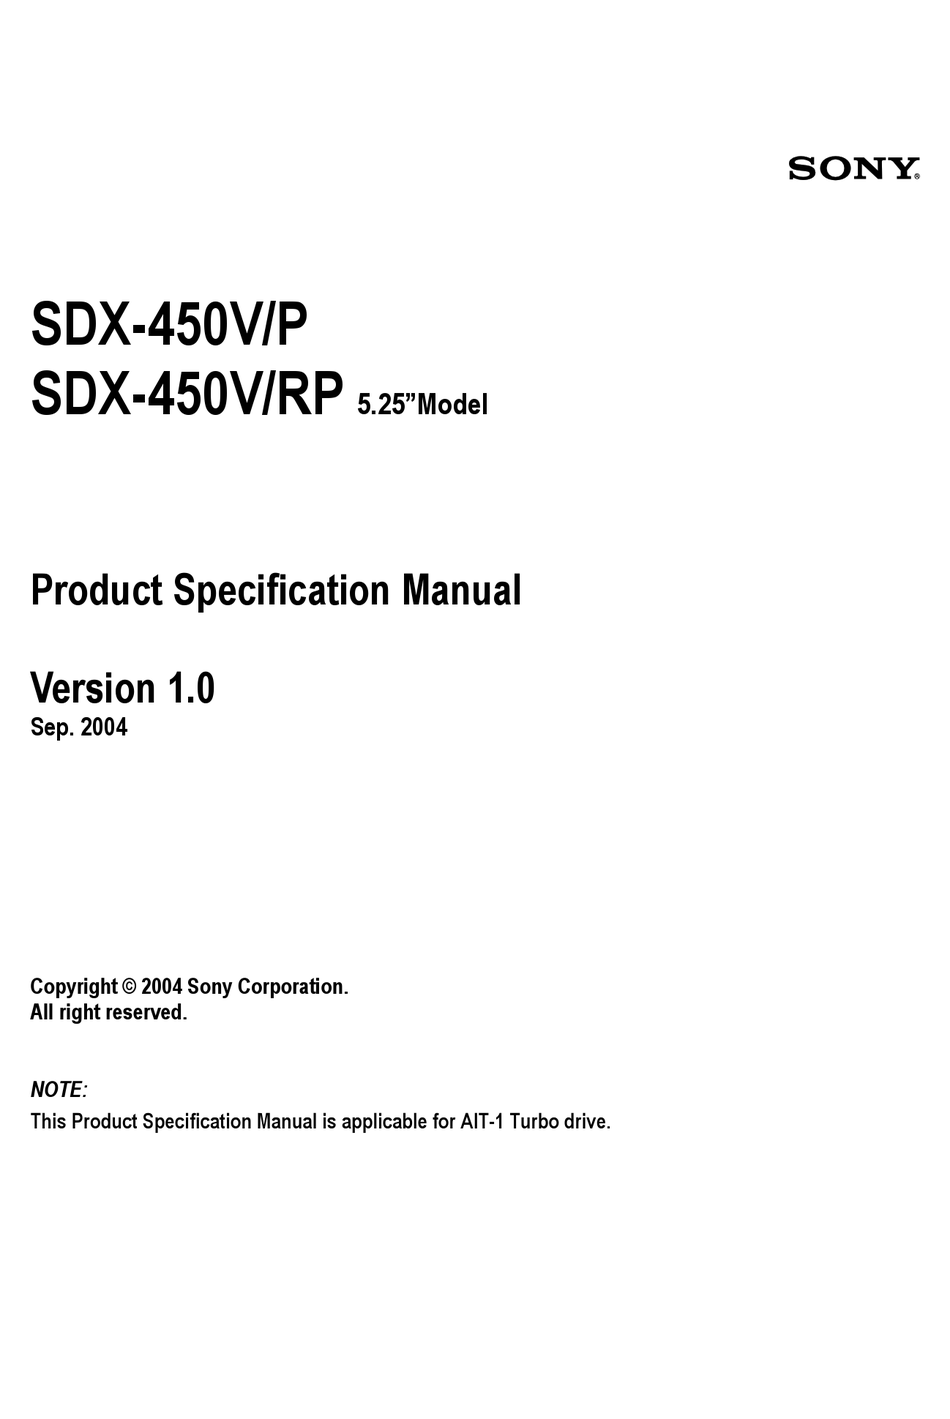 sdx-450v kumulativer Fehlerverlauf